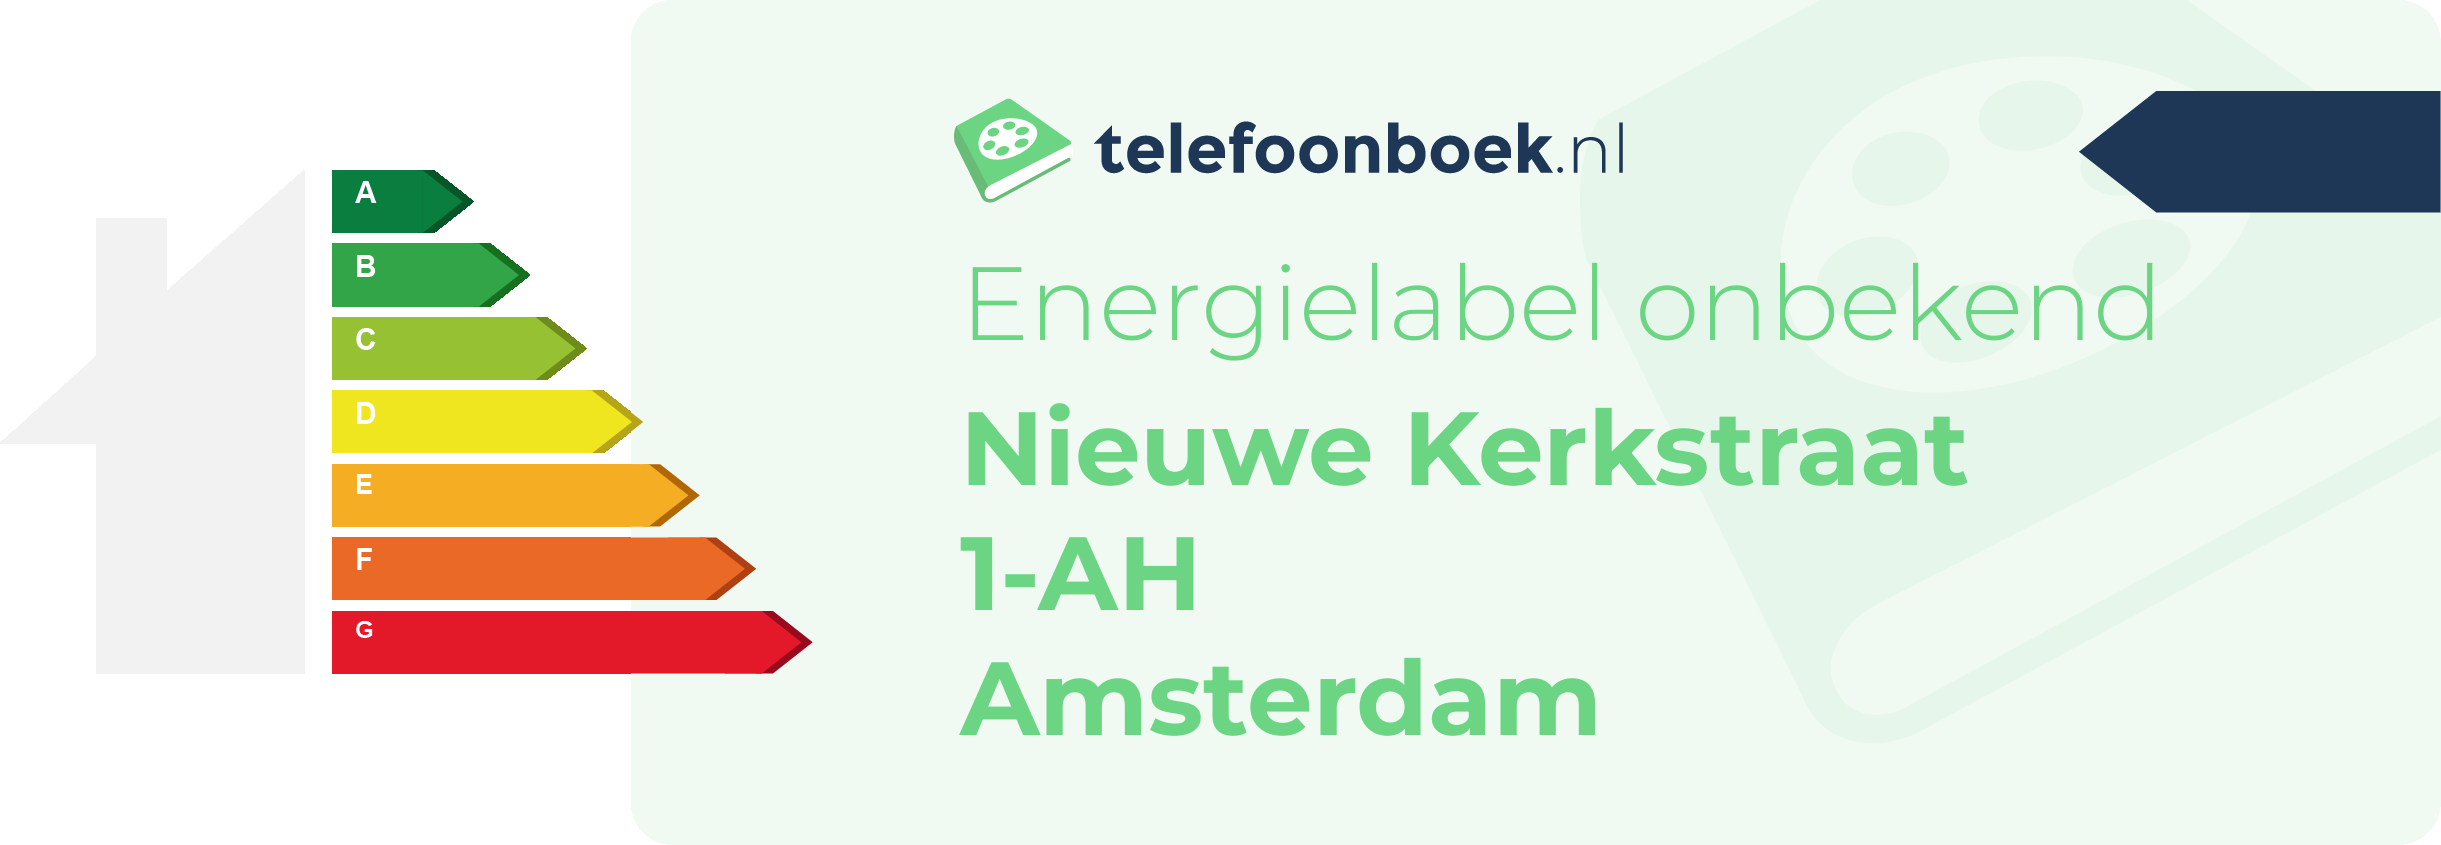 Energielabel Nieuwe Kerkstraat 1-AH Amsterdam